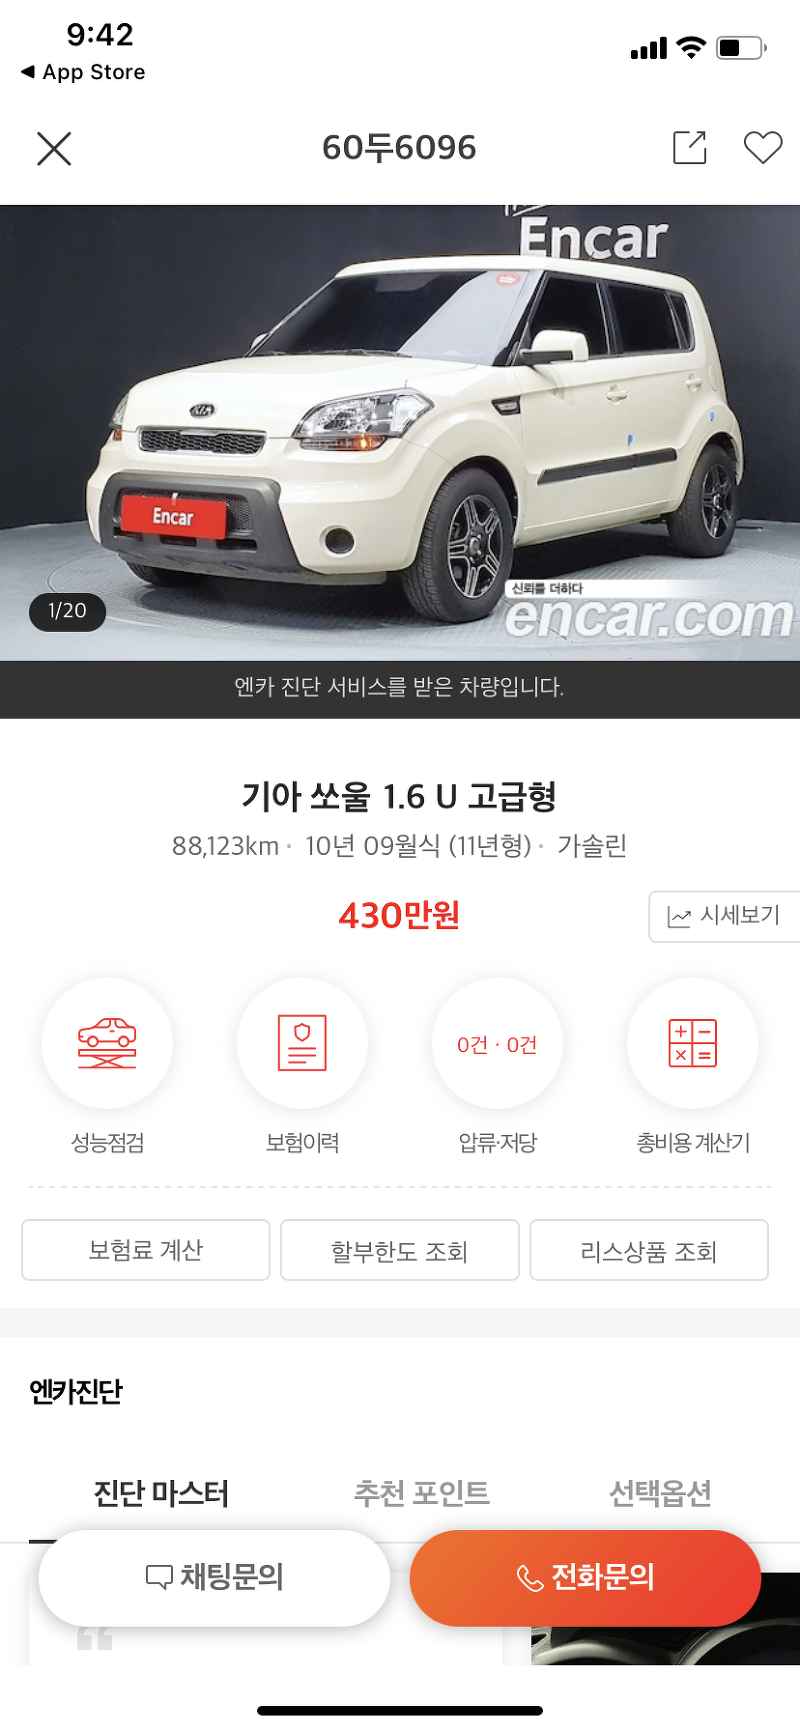 엔카  KB차차차  보배드림 - 중고차 매매앱 비교